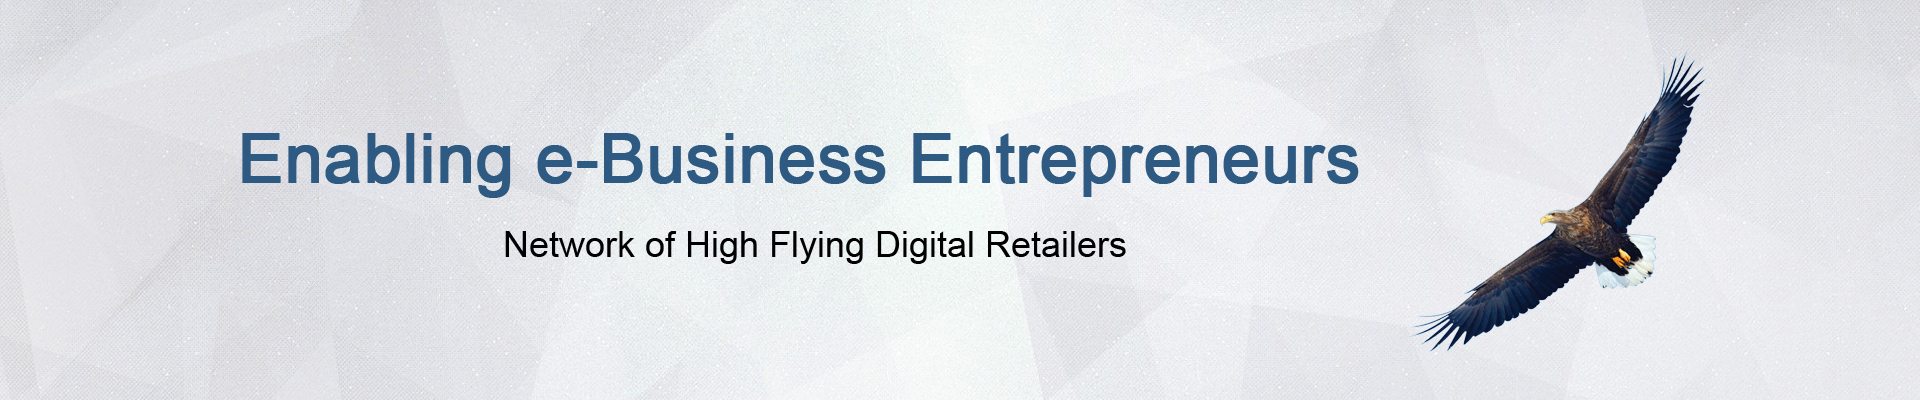 Enabling e-Business Entrepreneurs